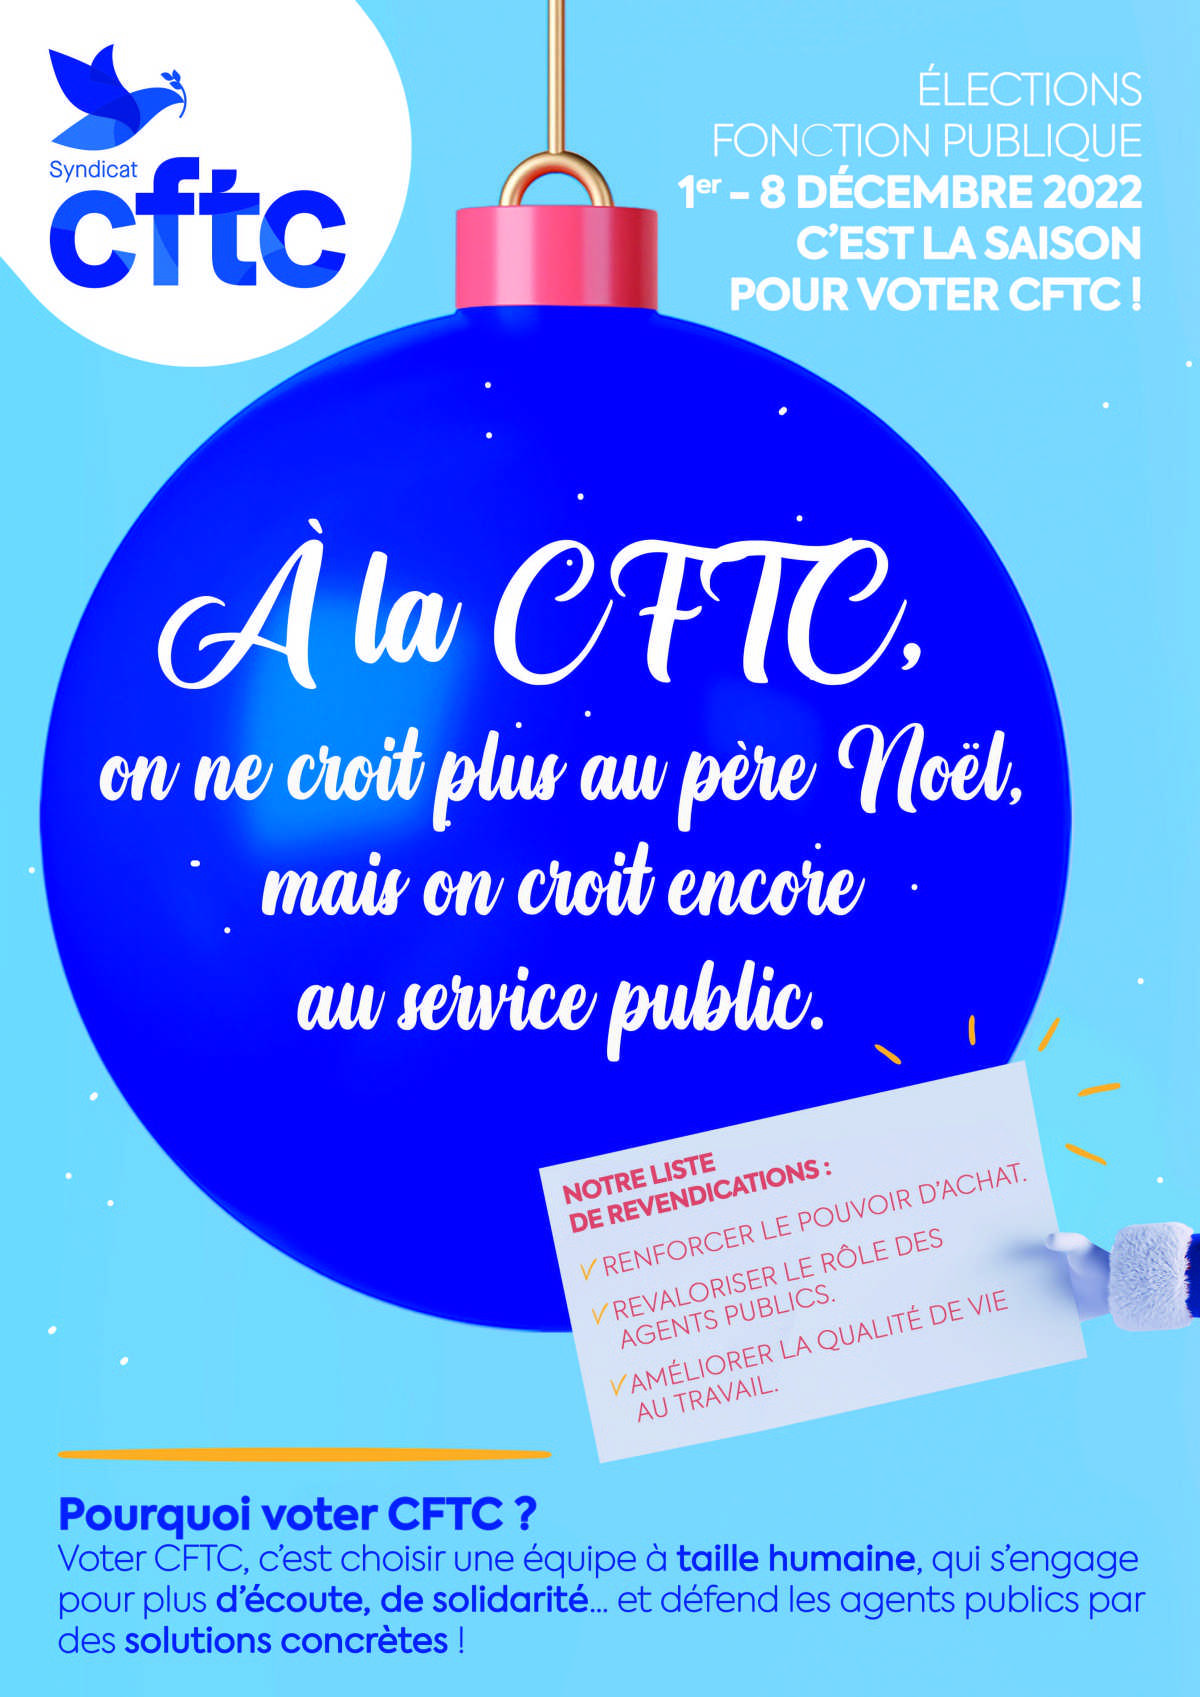 Election Fonction Publique : Pensez à faire voter CFTC du 1er au 8 décembre 2022